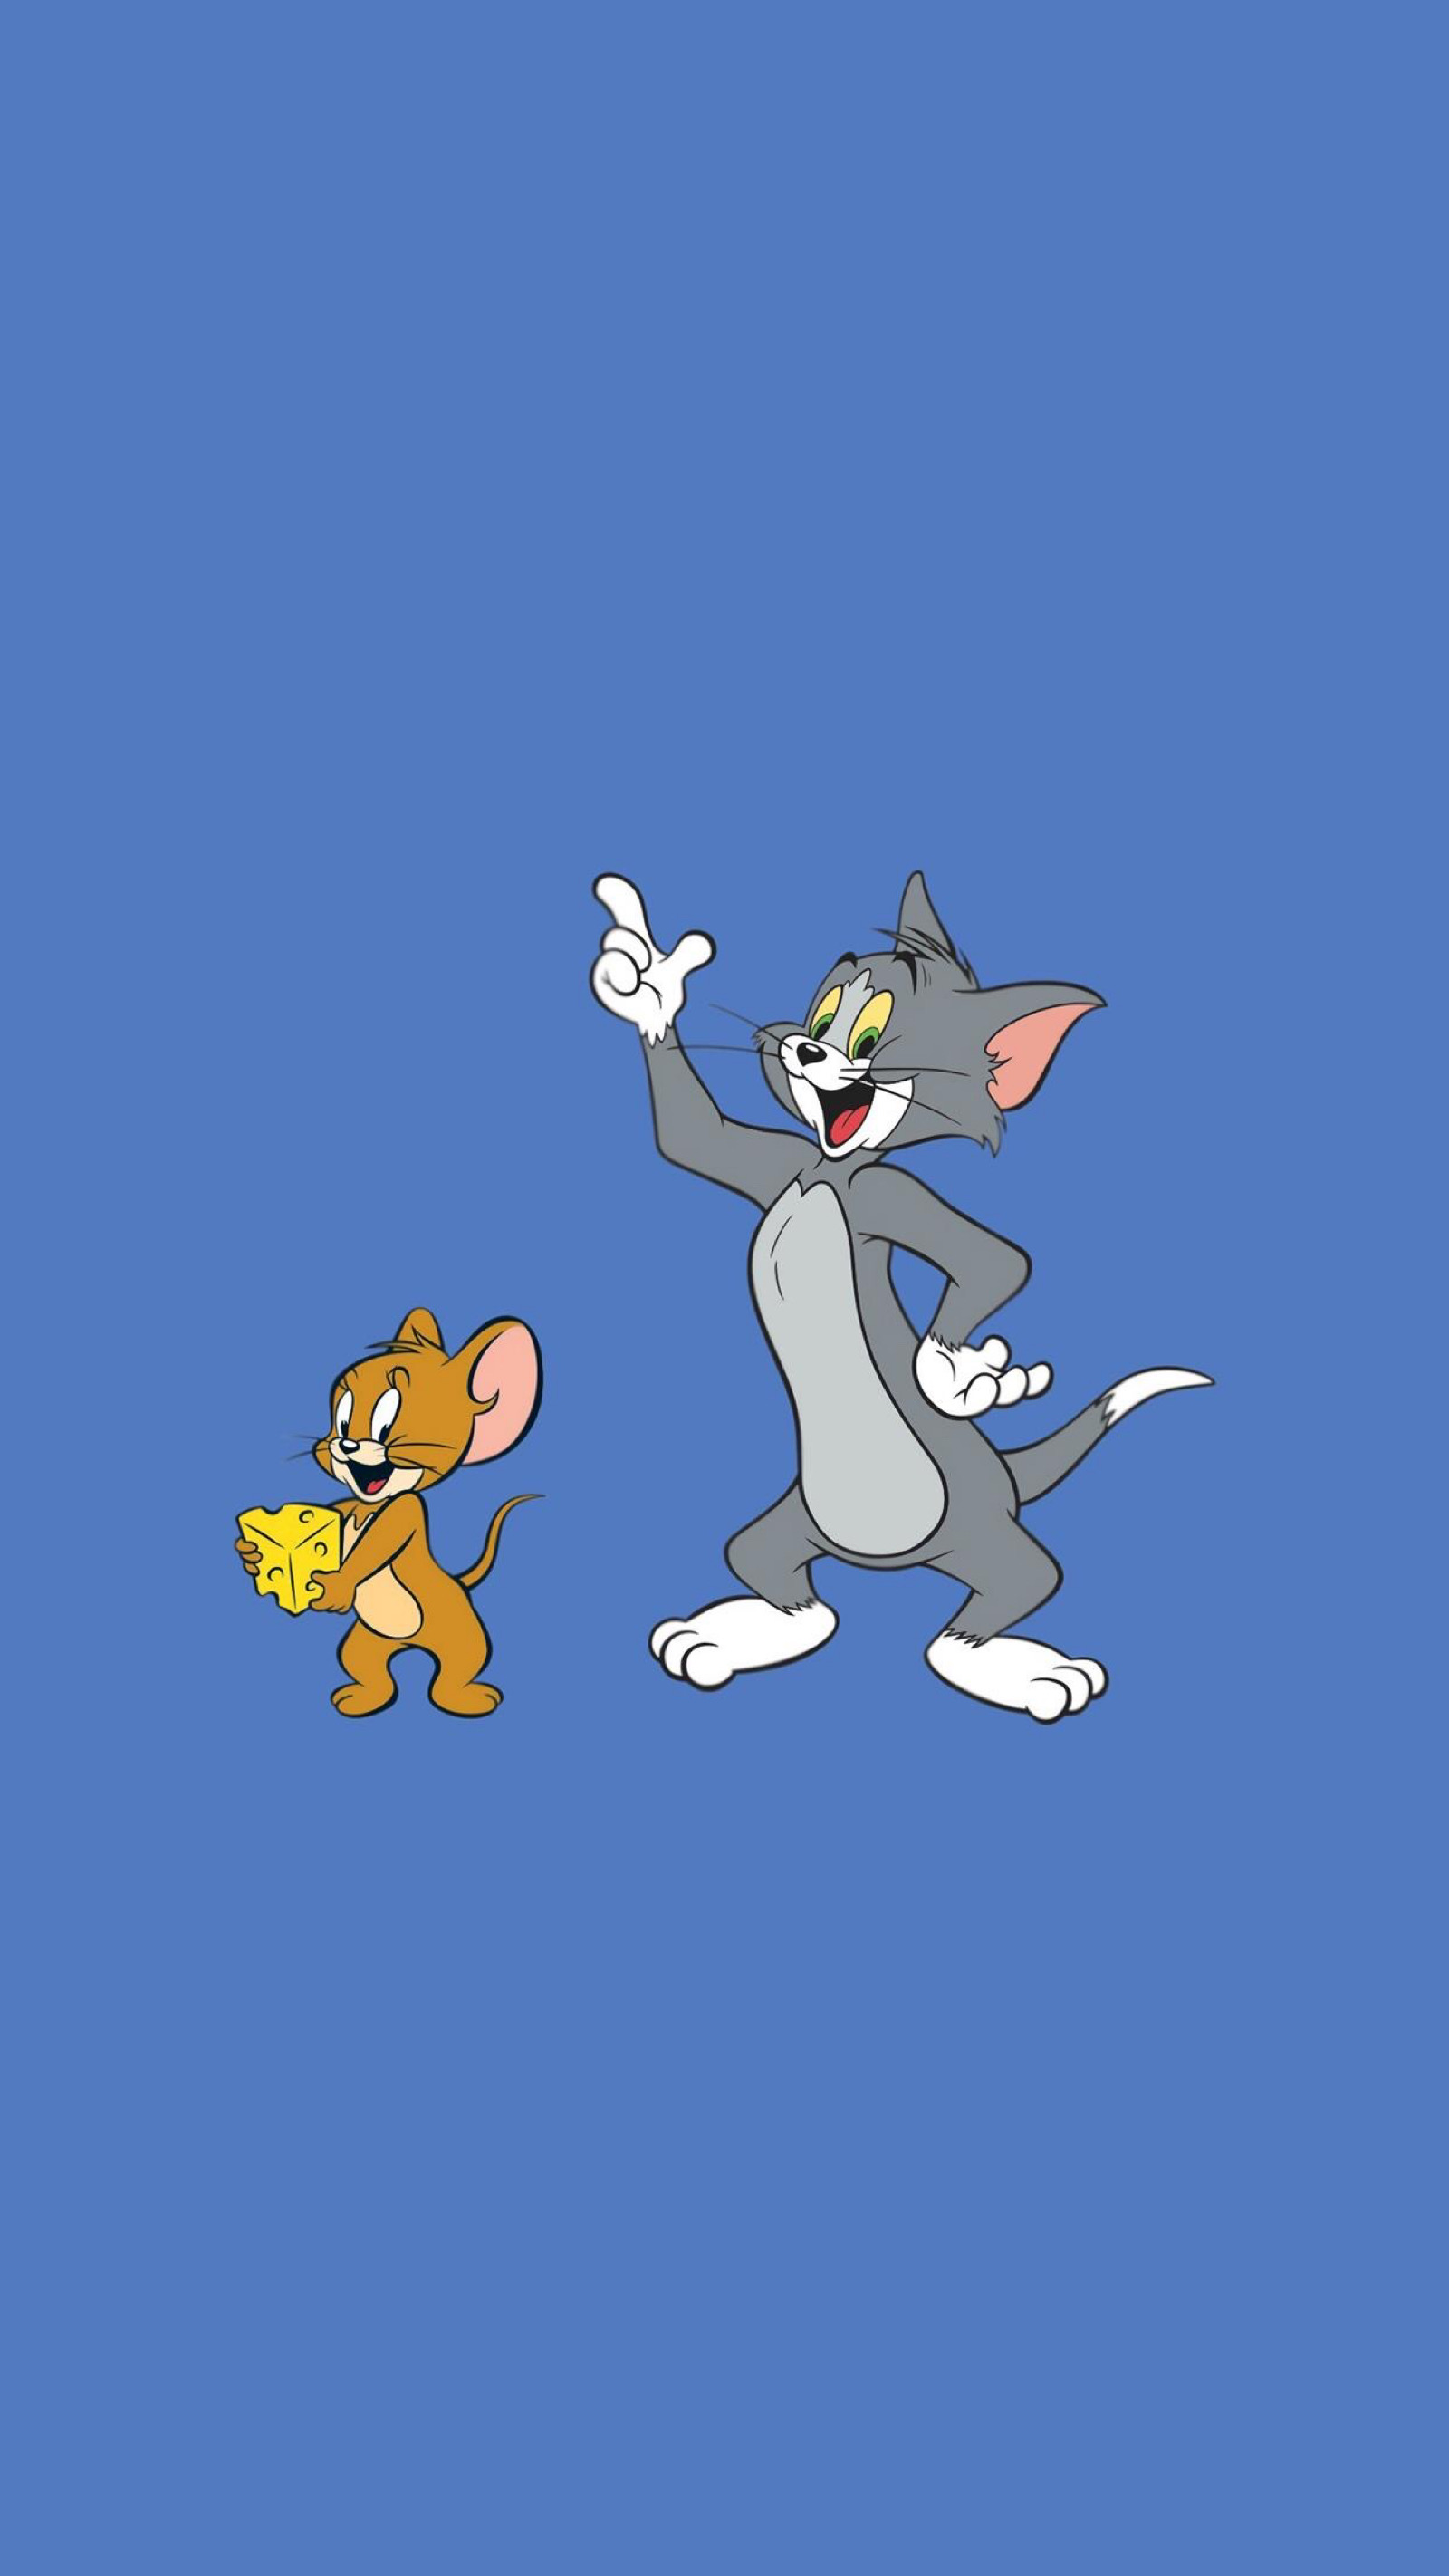 童年的回忆,致敬猫和老鼠导演吉恩·戴奇